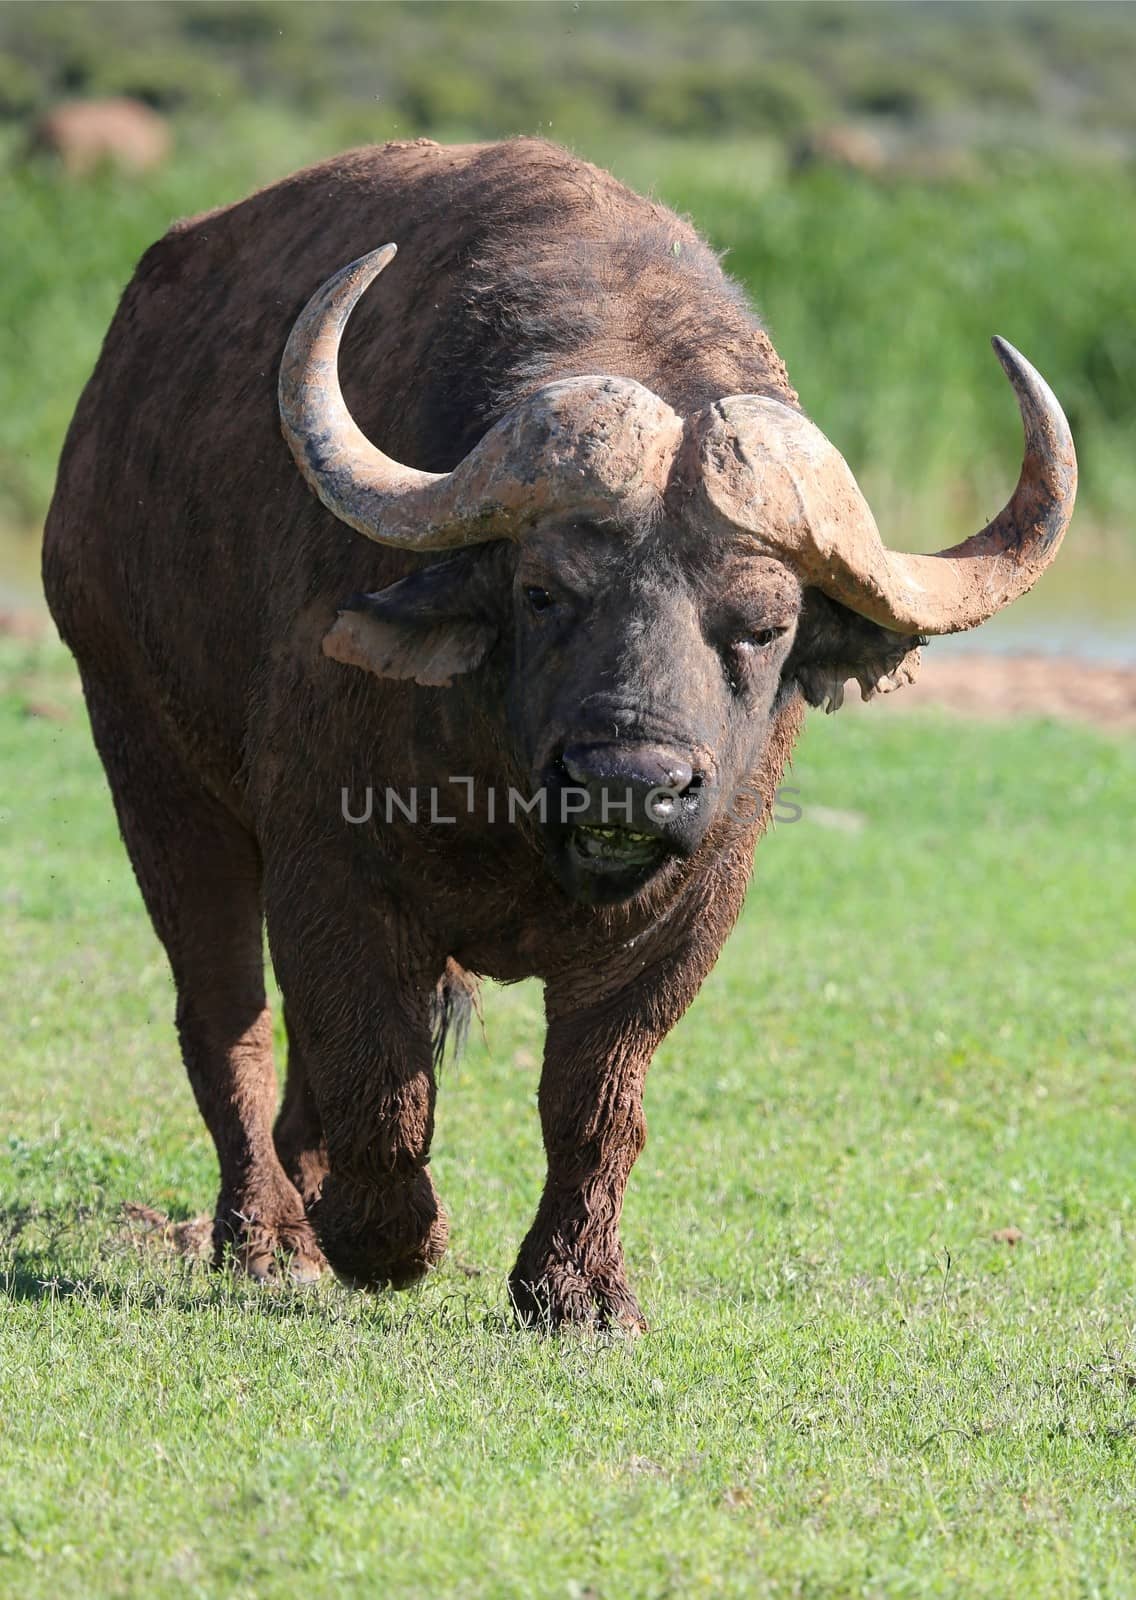 Angry Buffalo by fouroaks